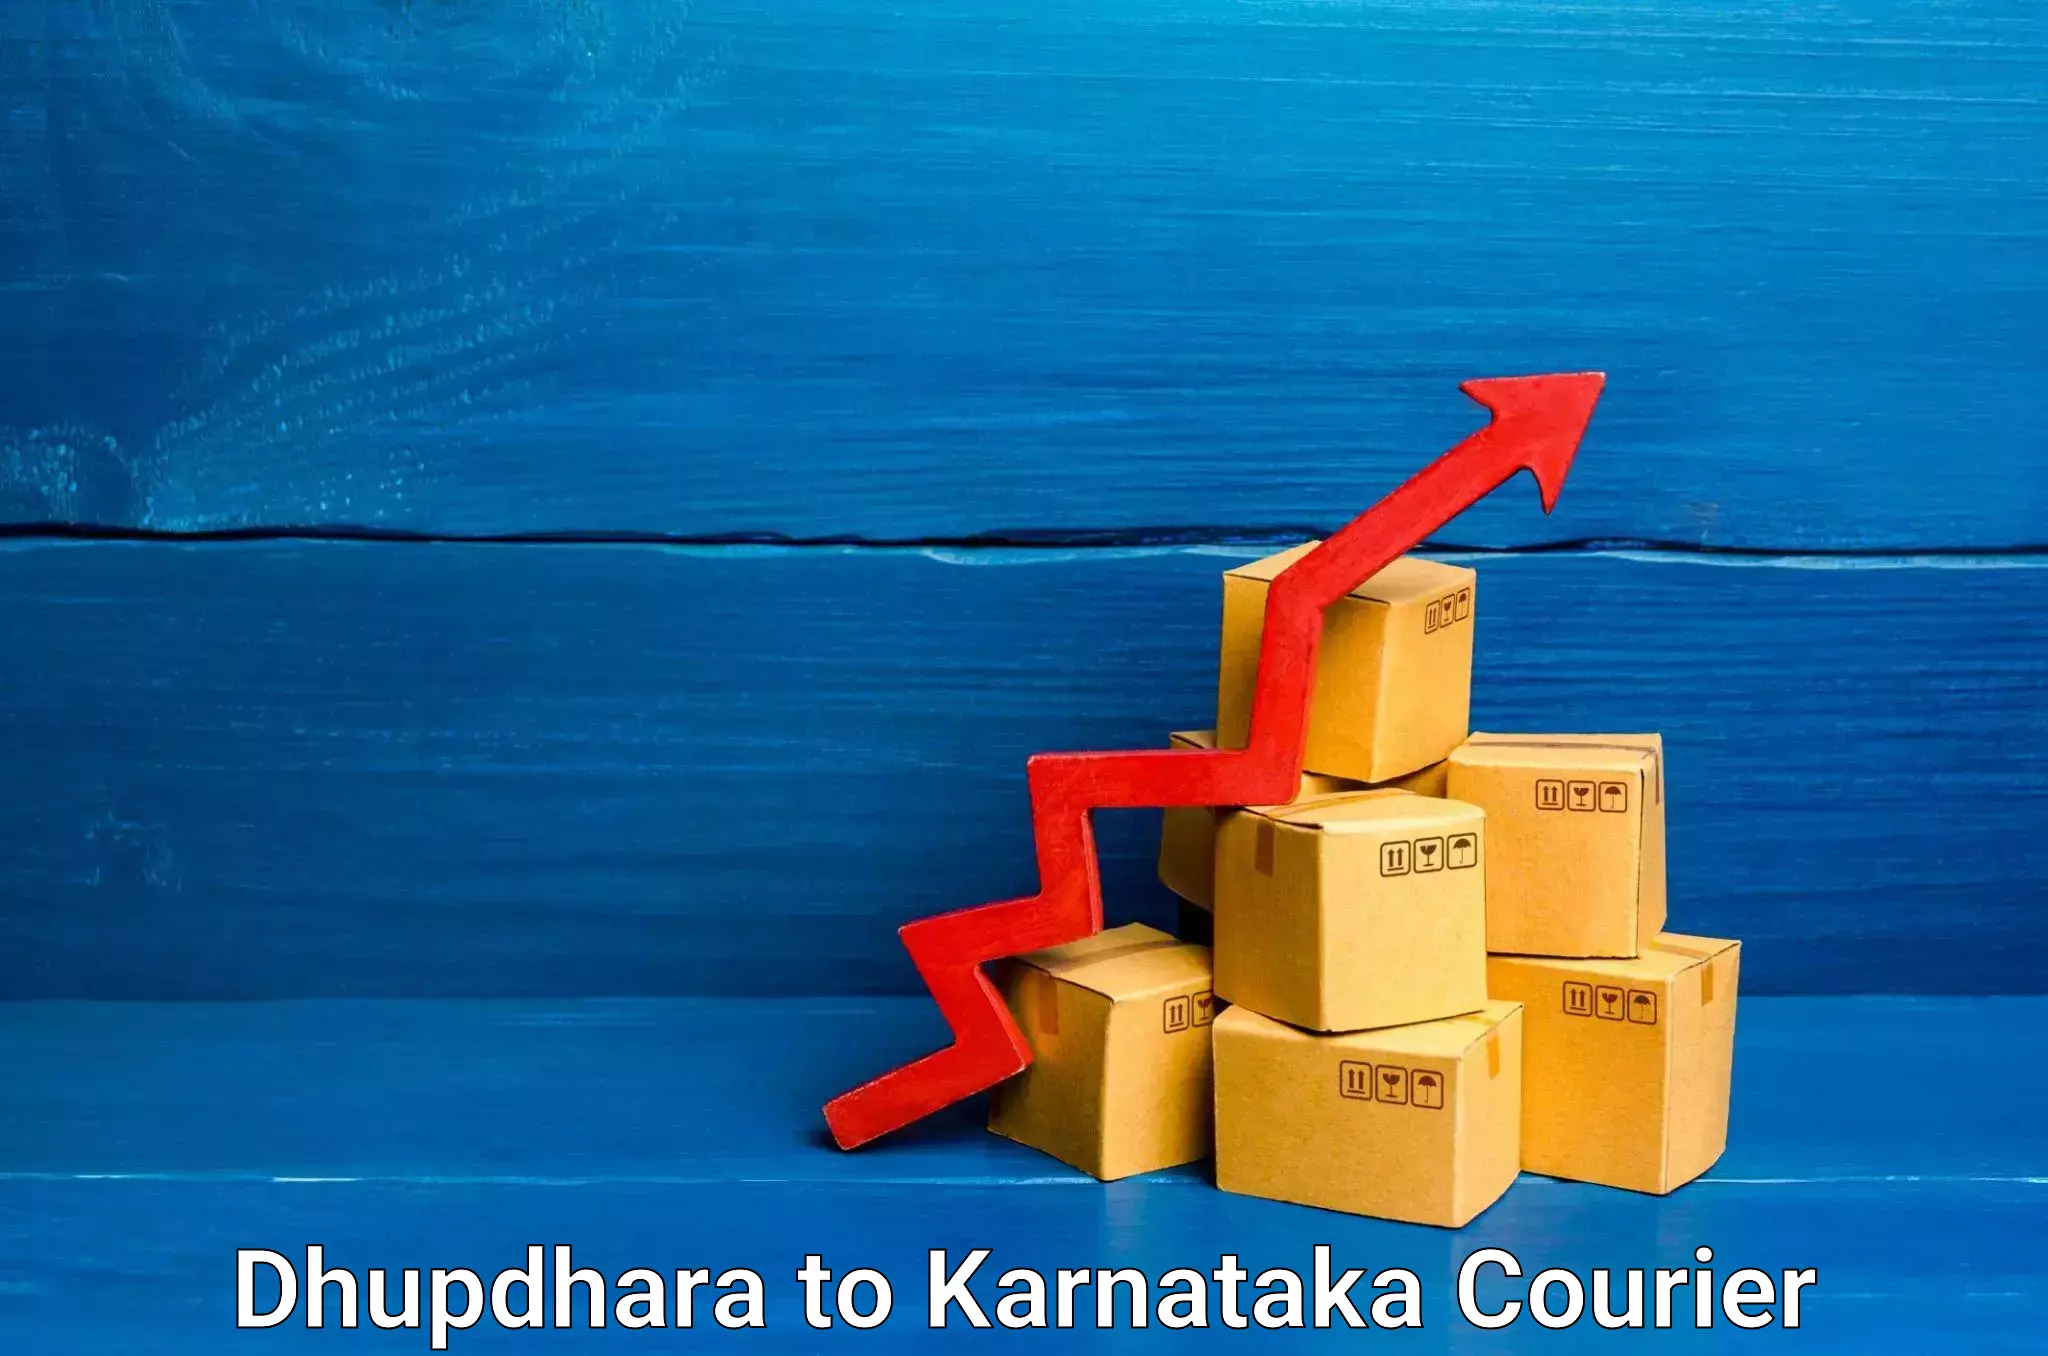 Courier service comparison Dhupdhara to Mangalore Port